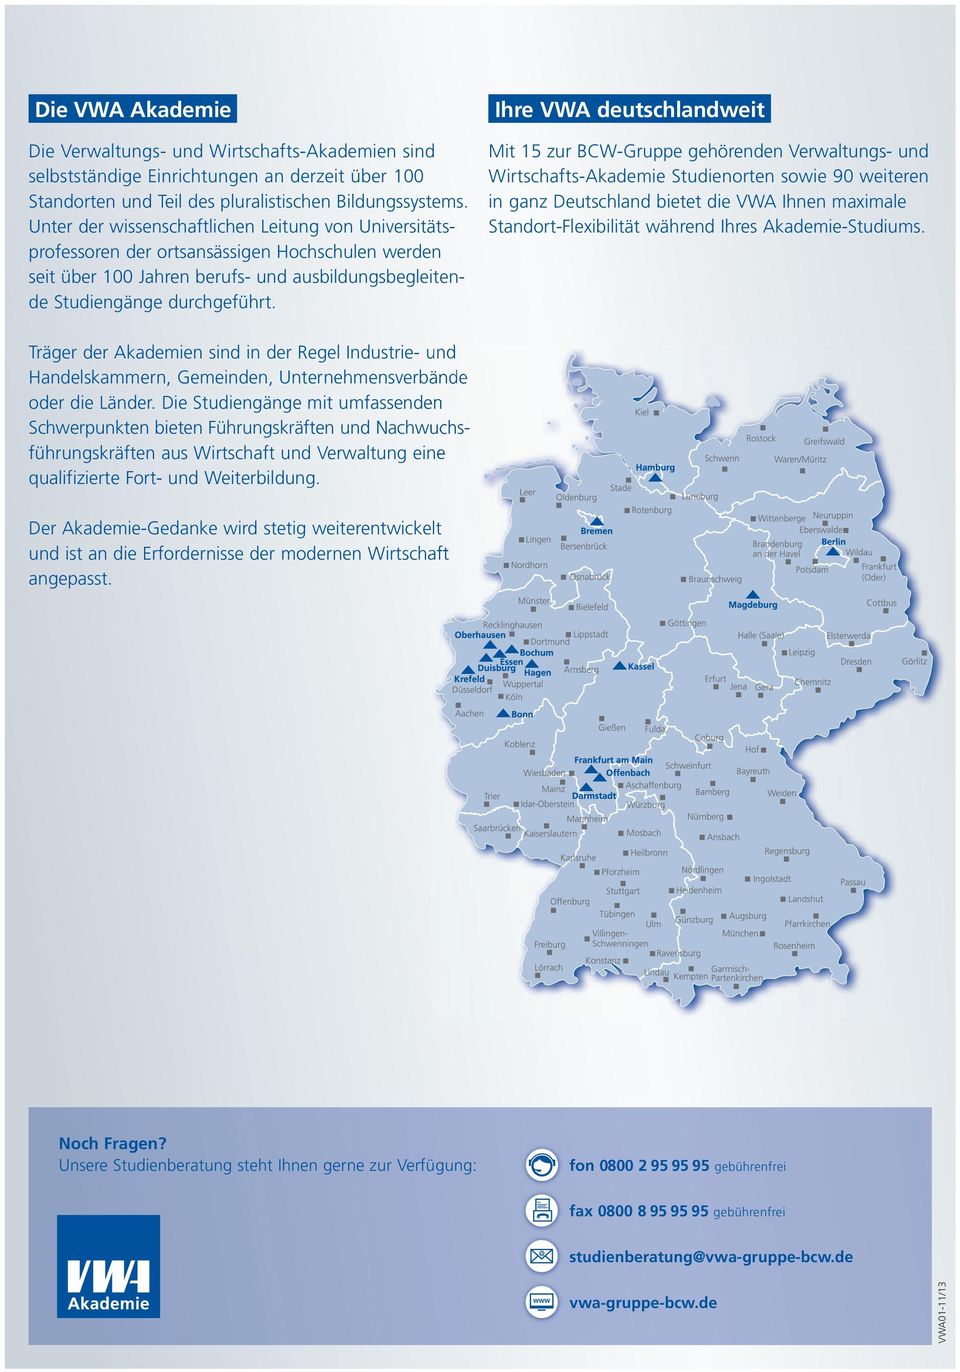 Ihre VWA deutschlandweit Mit 15 zur BCW-Gruppe gehörenden Verwaltungs- und Wirtschafts-Akademie Studienorten sowie 90 weiteren in ganz Deutschland bietet die VWA Ihnen maximale Standort-Flexibilität